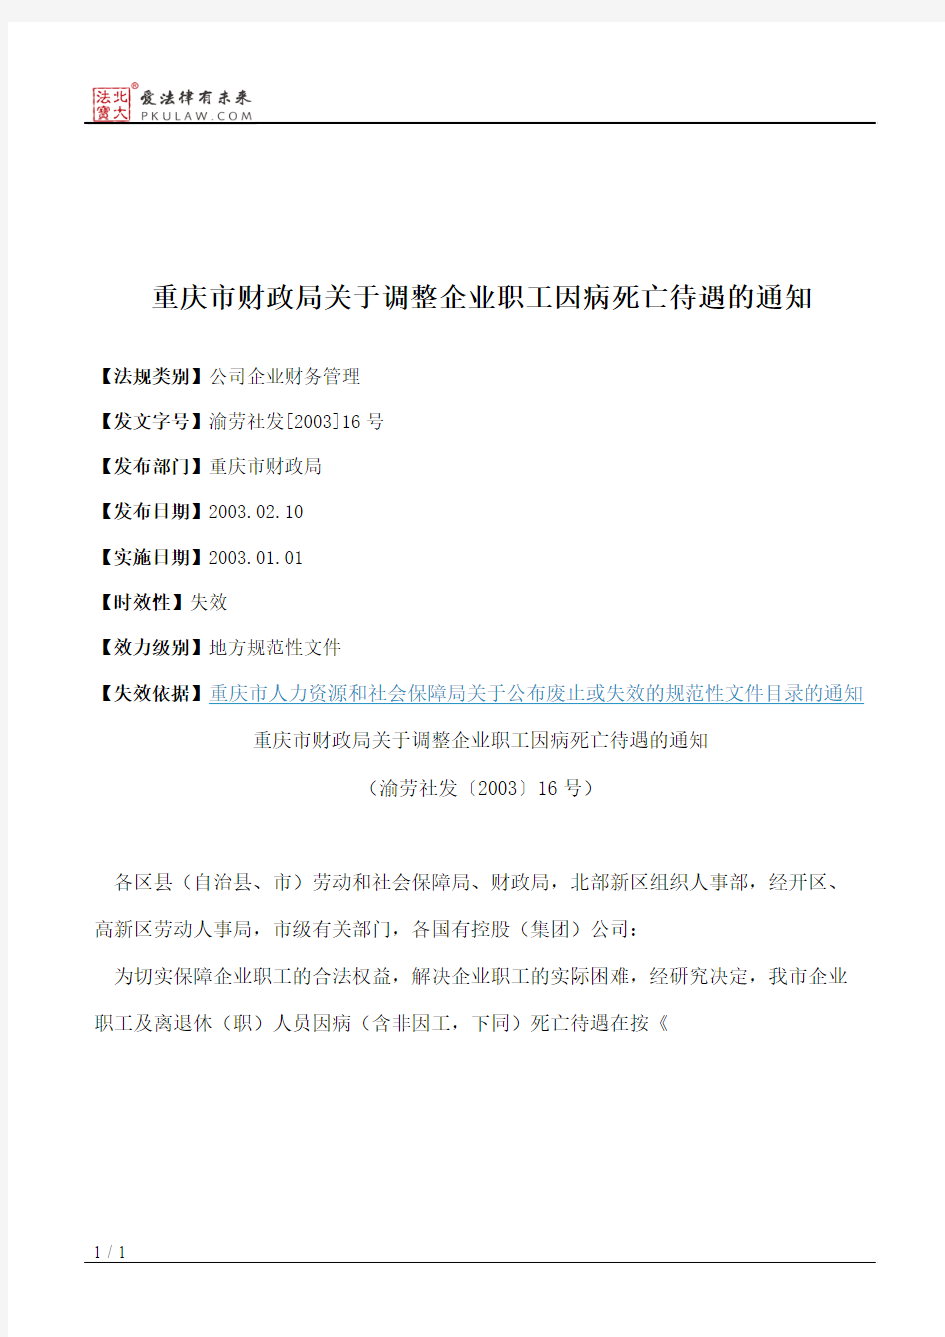 重庆市财政局关于调整企业职工因病死亡待遇的通知